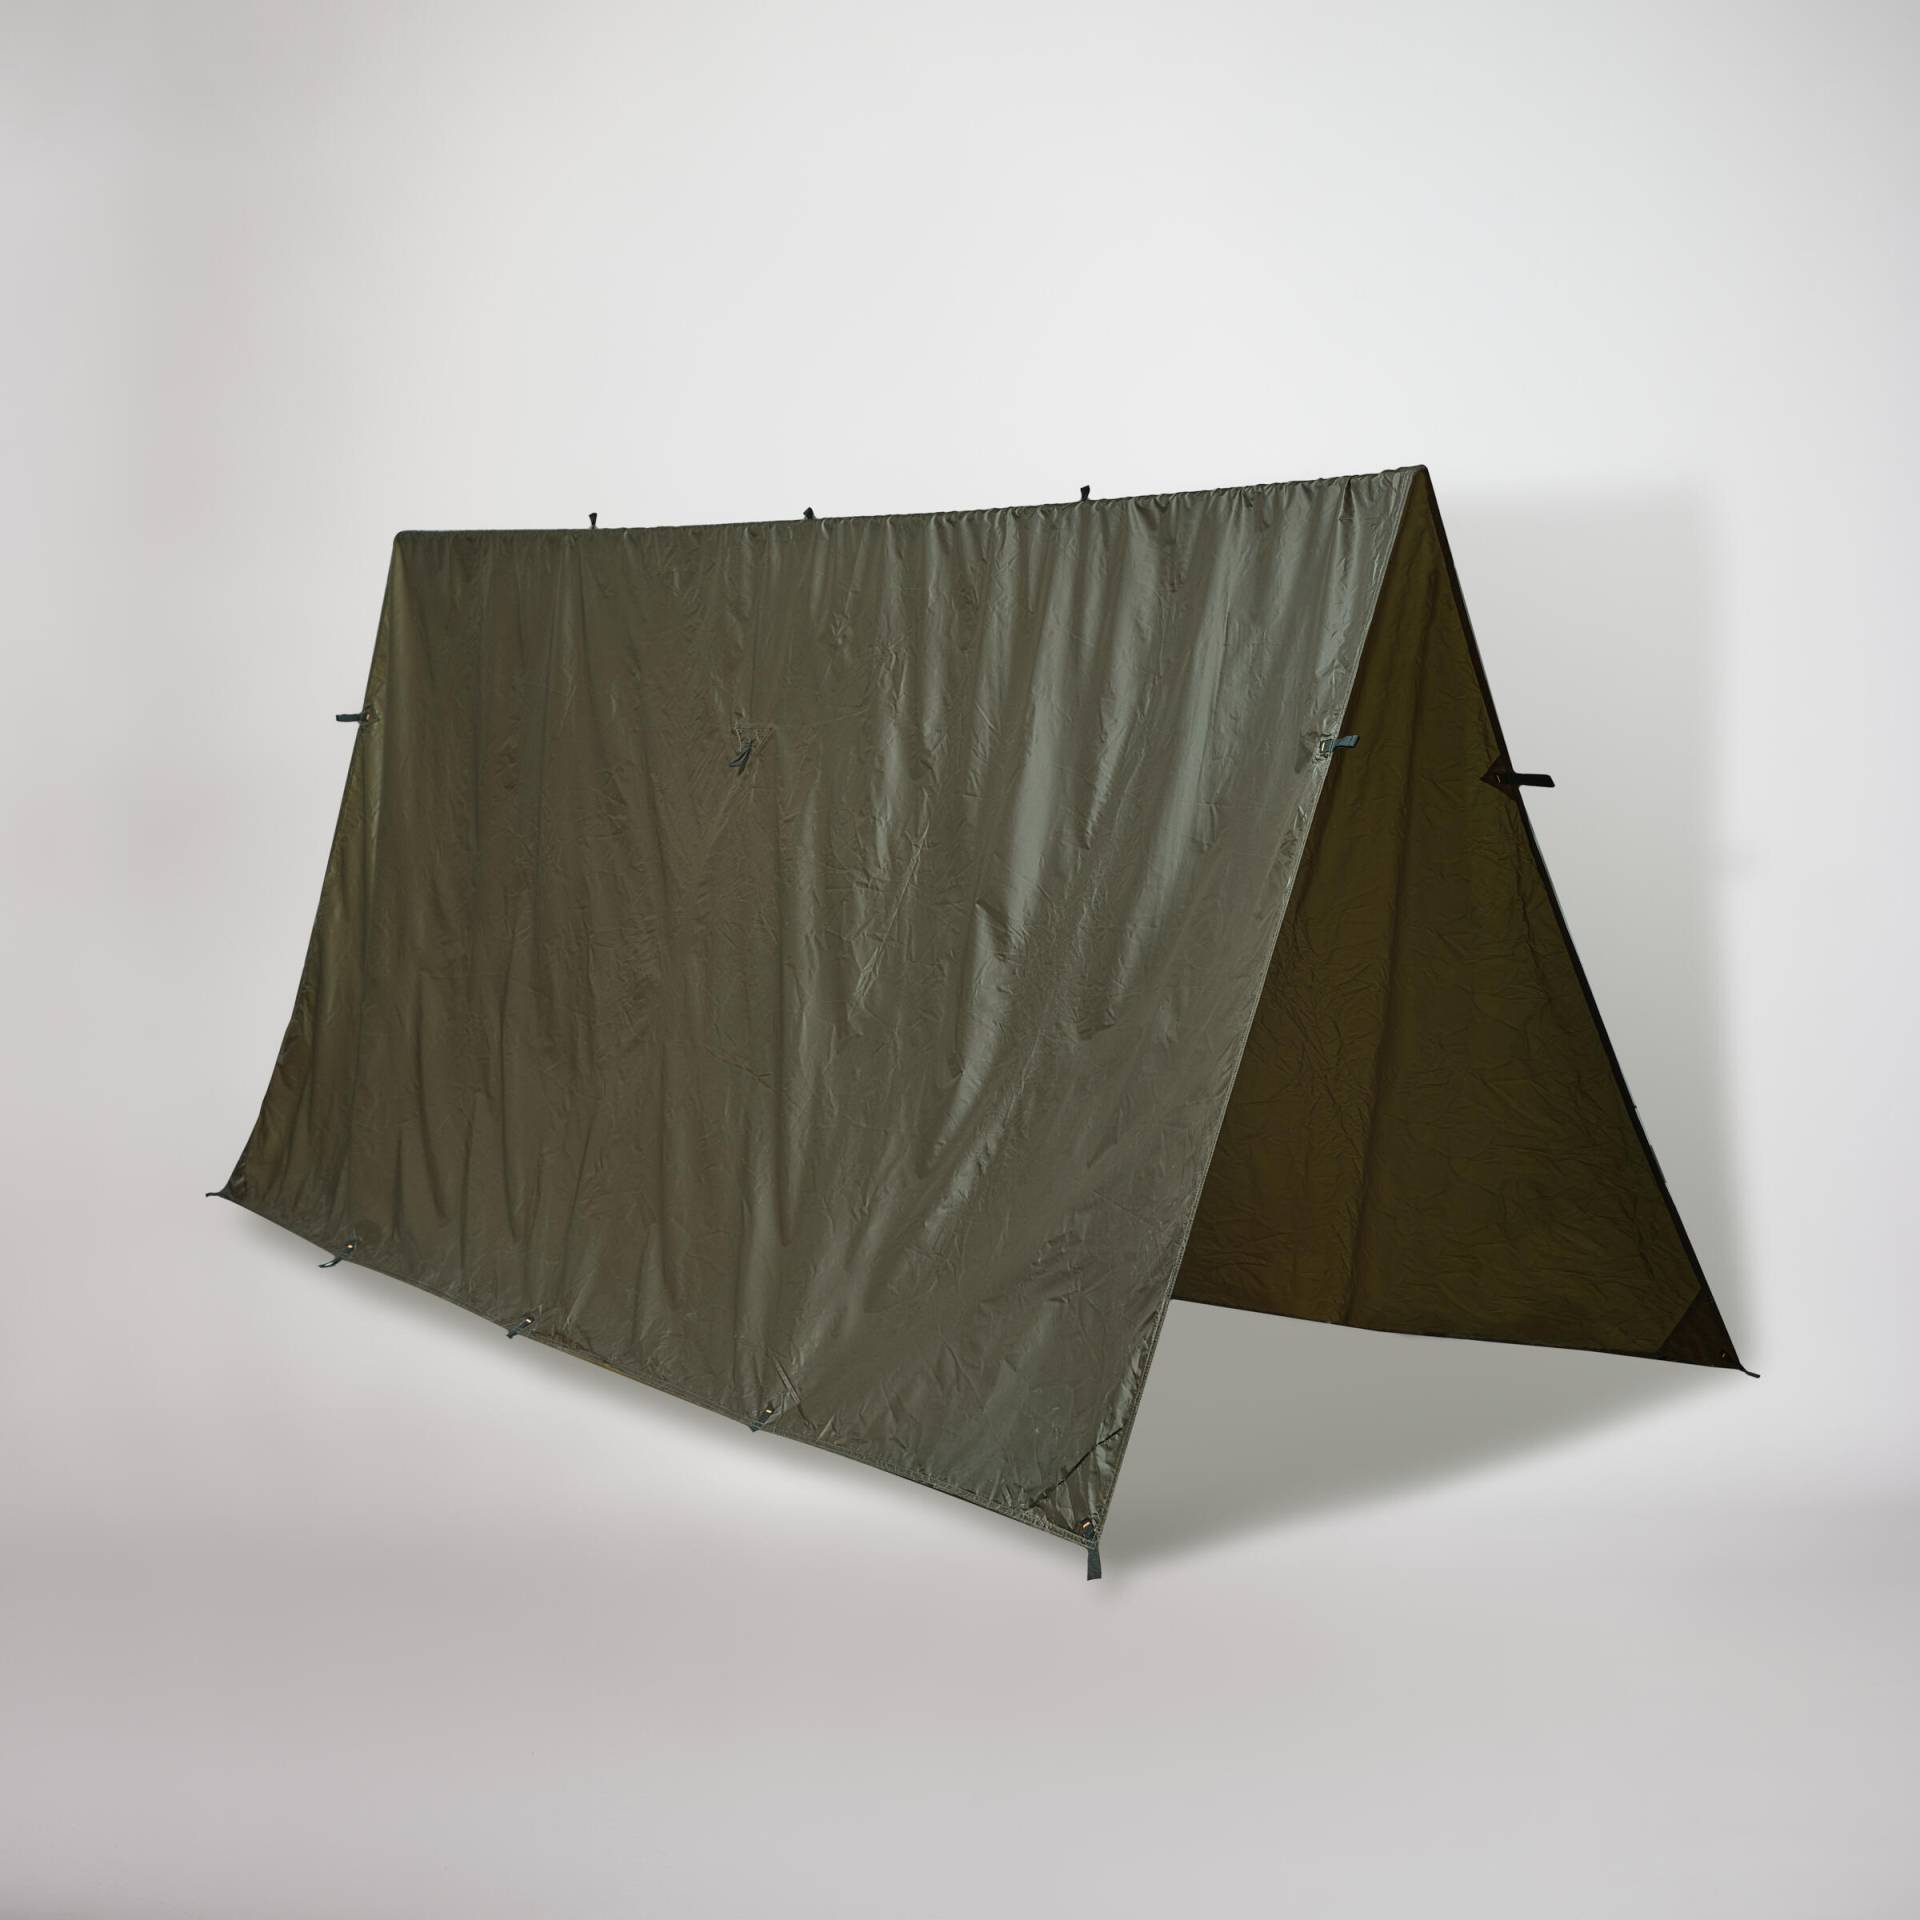 Plane Bushcraft Camping kompakt leicht 2,95 × 2,8 m wasserdicht khaki von SOLOGNAC